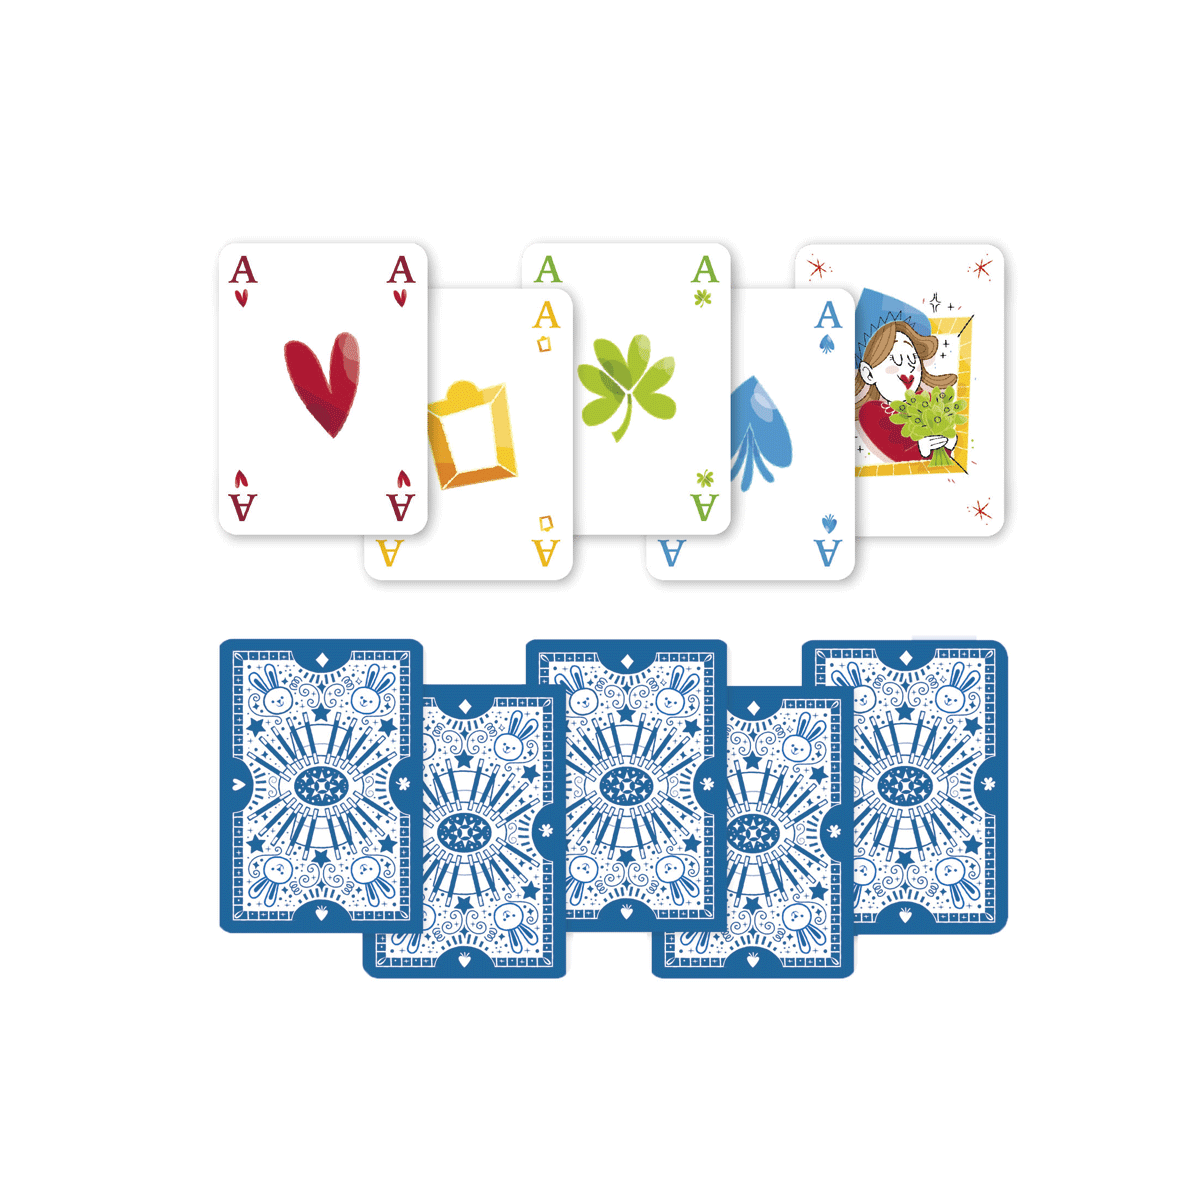 Clementoni - le mie prime carte magiche - gioco di carte, 16809 - CLEMENTONI